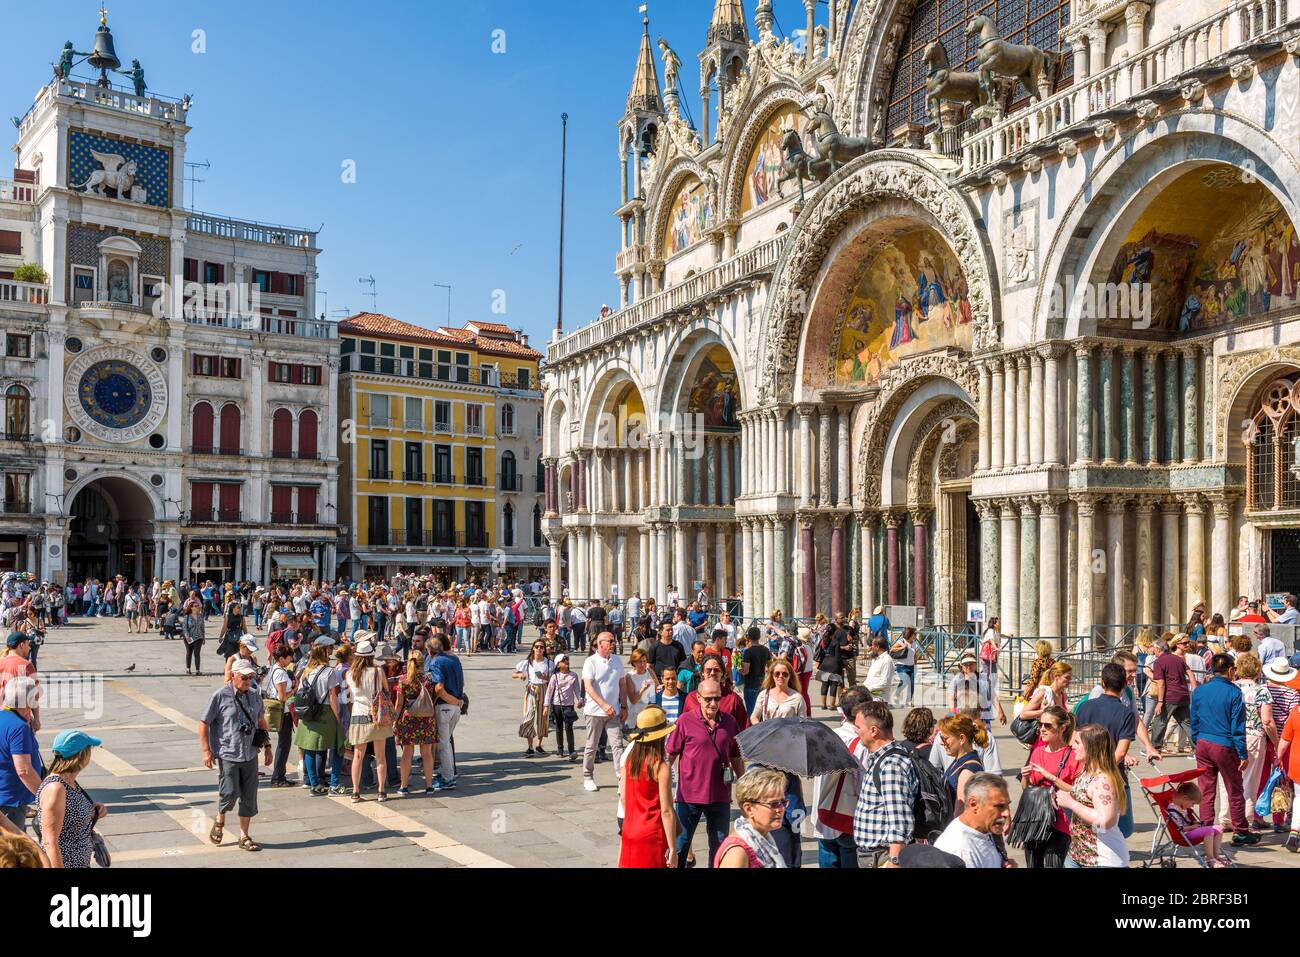 Venedig, Italien - 18. Mai 2017: Die Leute besuchen den Markusplatz in Venedig. Markusdom im Sonnenlicht. San Marco ist die wichtigste Touristenattraktion von Venedig Stockfoto